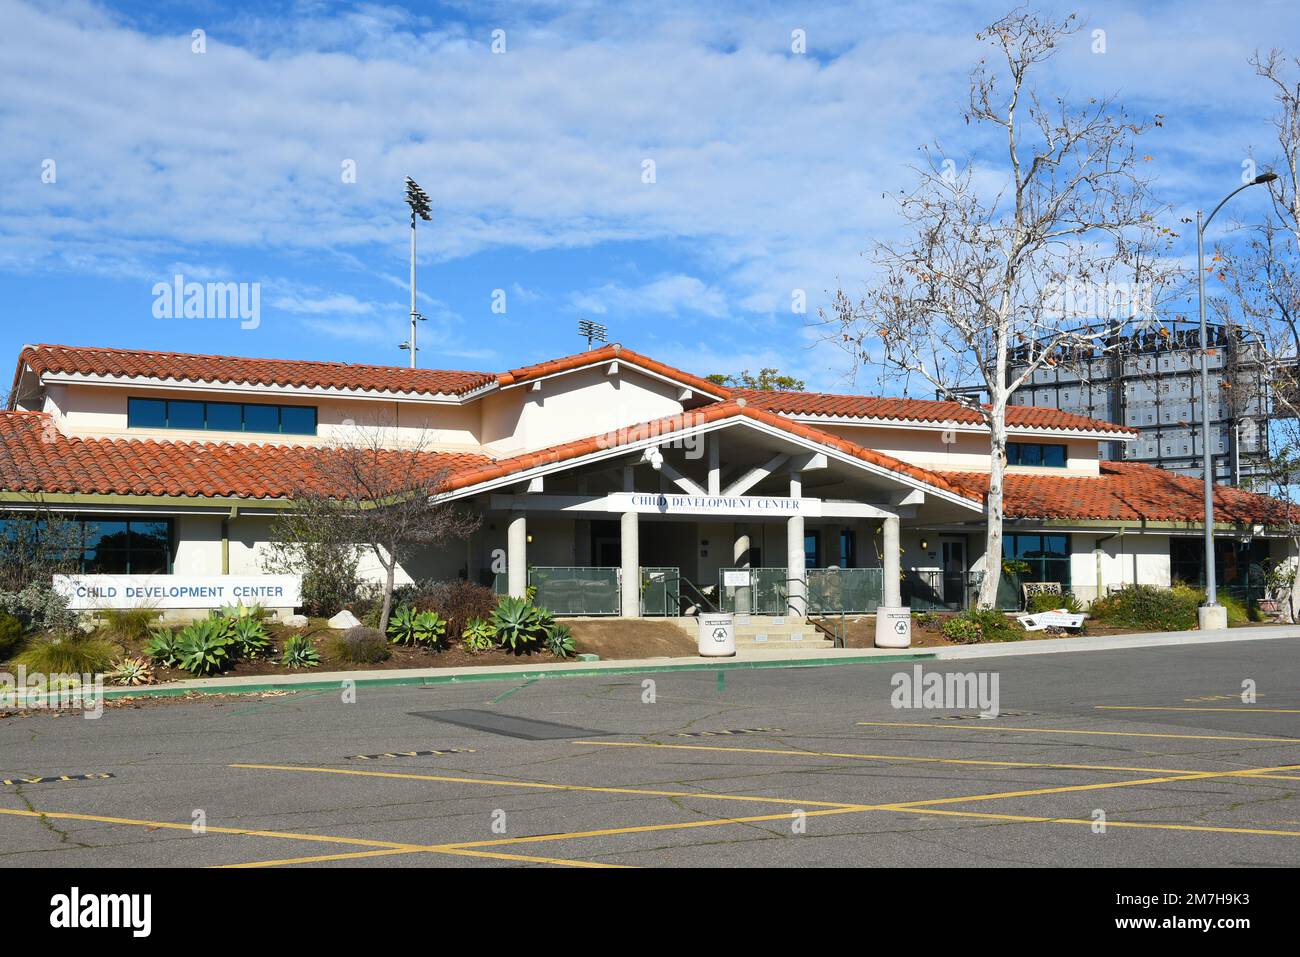 MISSION VIEJO, CALIFORNIE - 8 JANV. 2023: Le Centre de développement de l'enfant sur le campus de Saddleback College. Banque D'Images